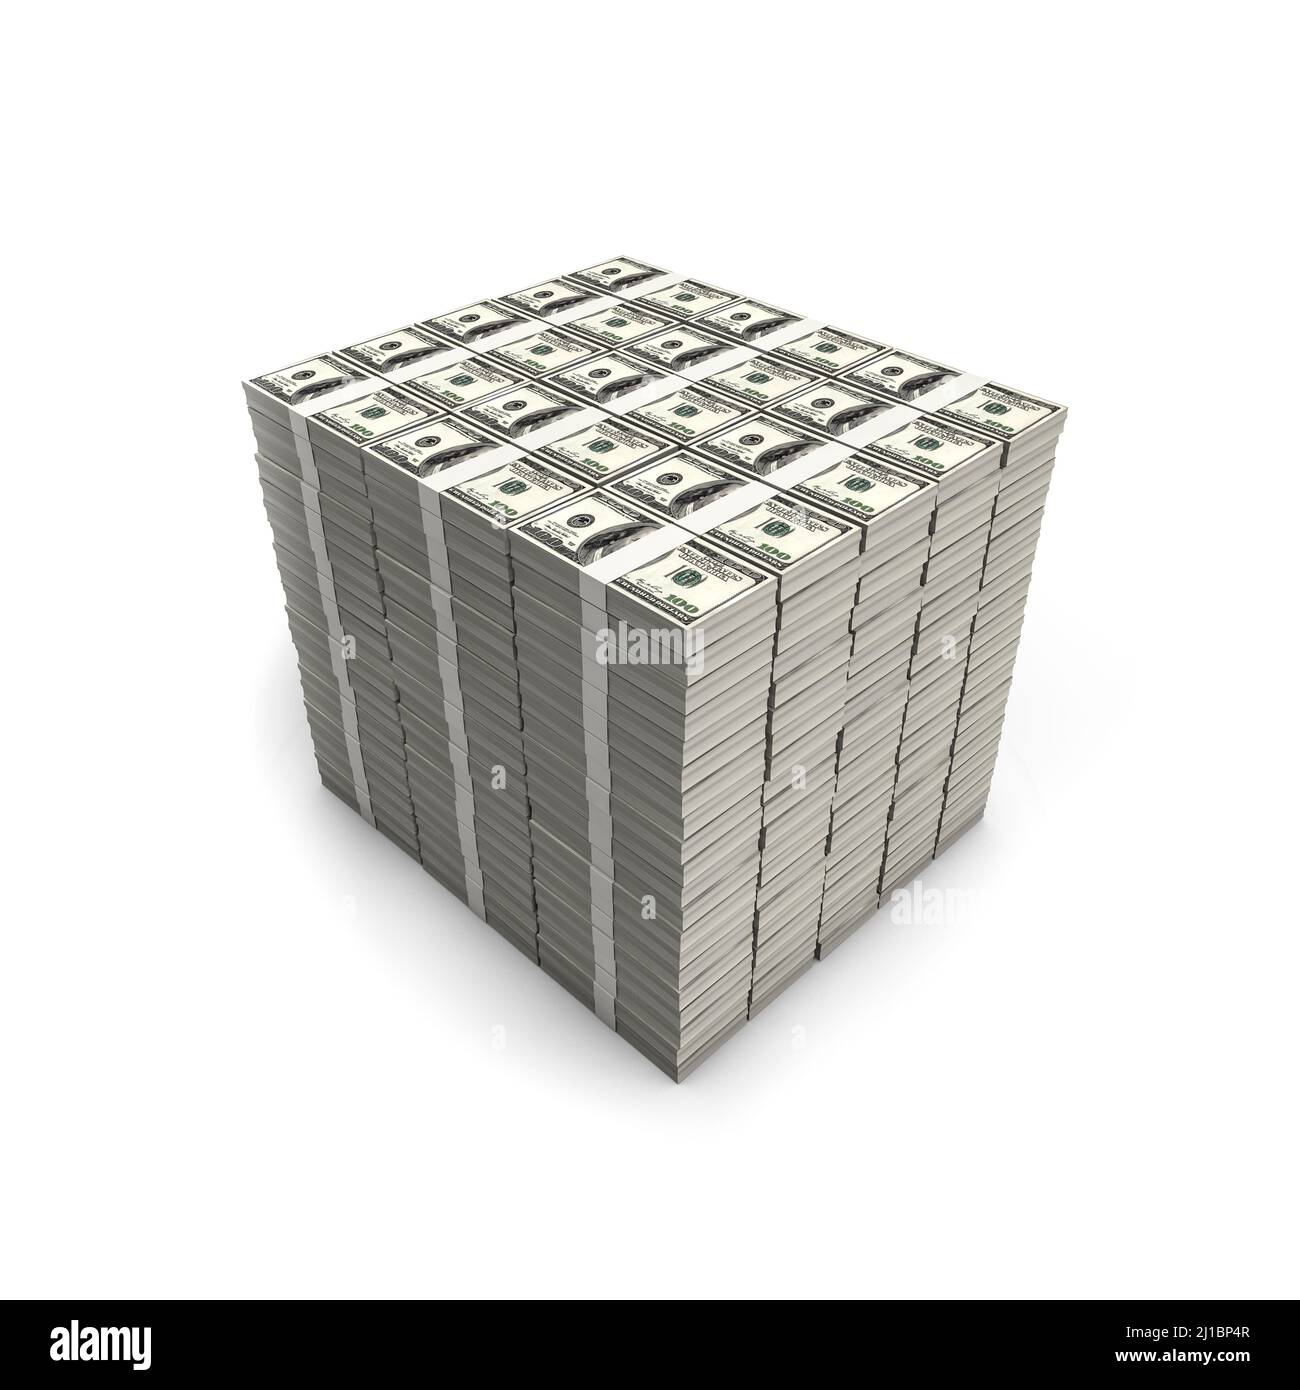 Millions of American Dollars - 3D Darstellung von Stapeln von hundert Dollar-Scheinen auf weißem Hintergrund Stockfoto